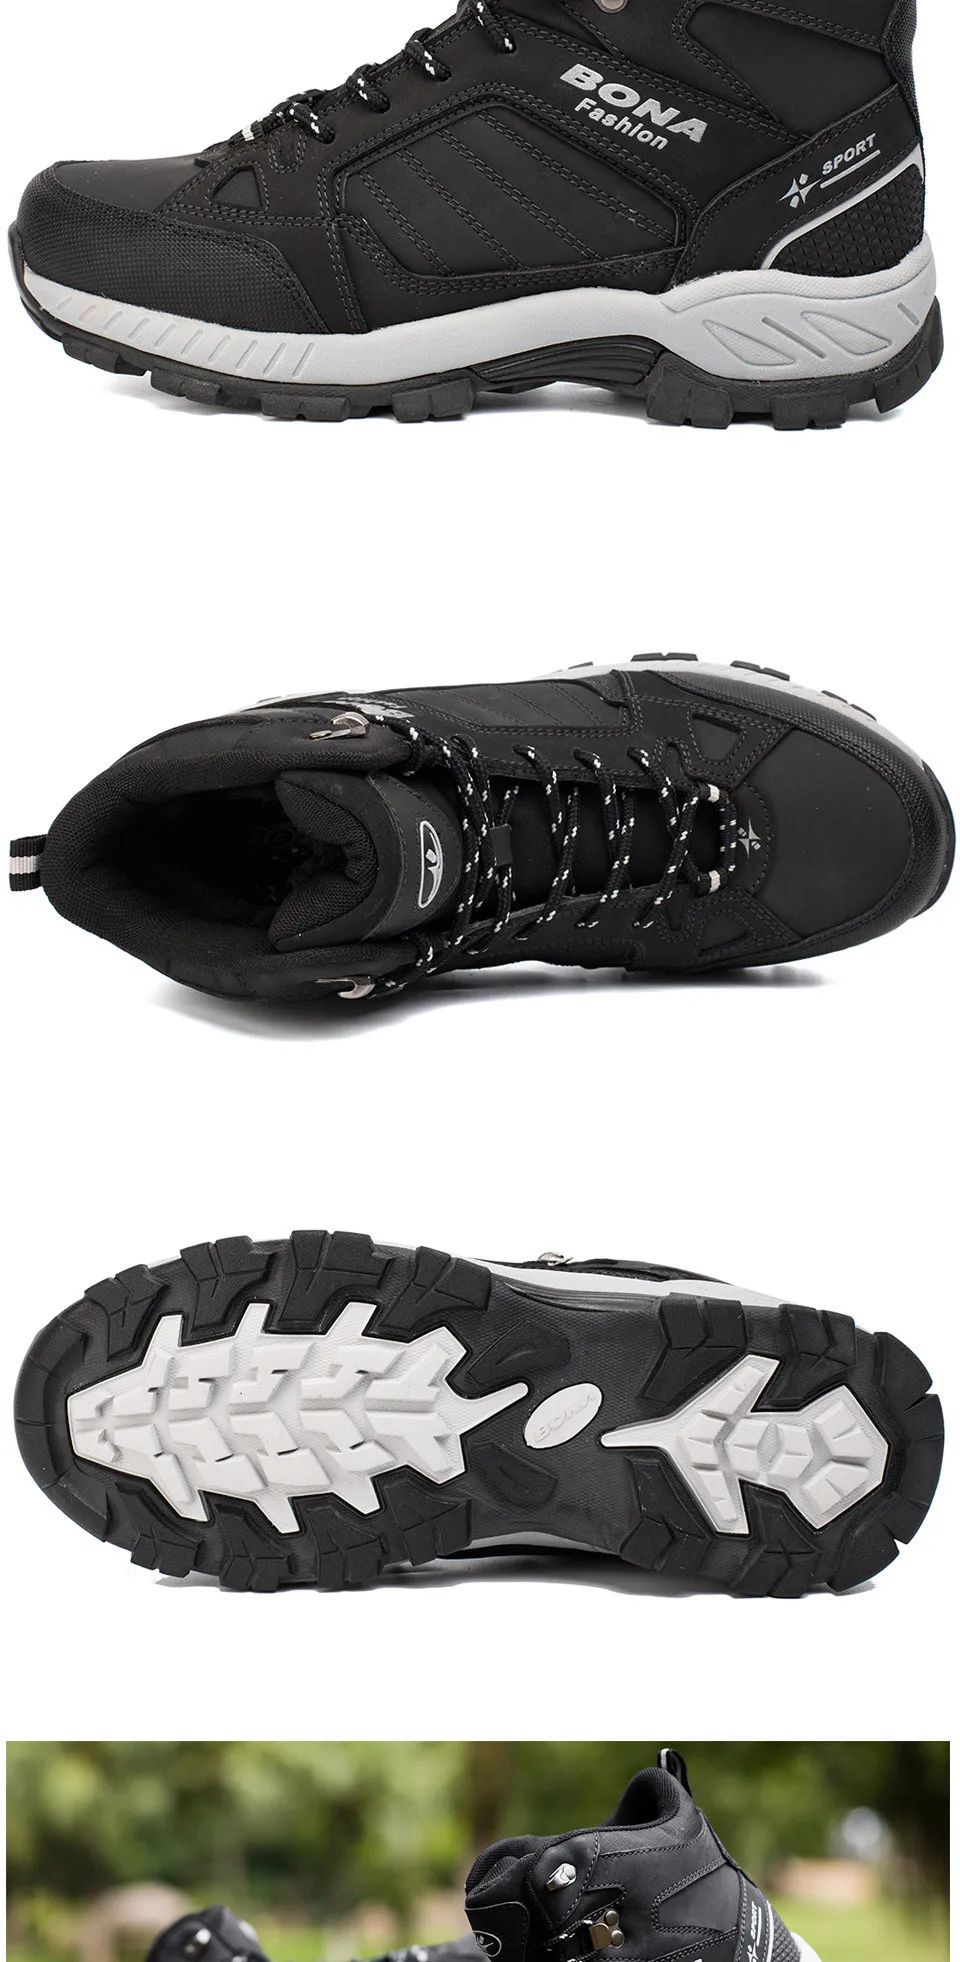 BONA/мужские походные ботинки; теплые треккинговые ботинки; Уличная обувь для бега и треккинга; спортивная обувь; многофункциональные альпинистские кроссовки для мужчин